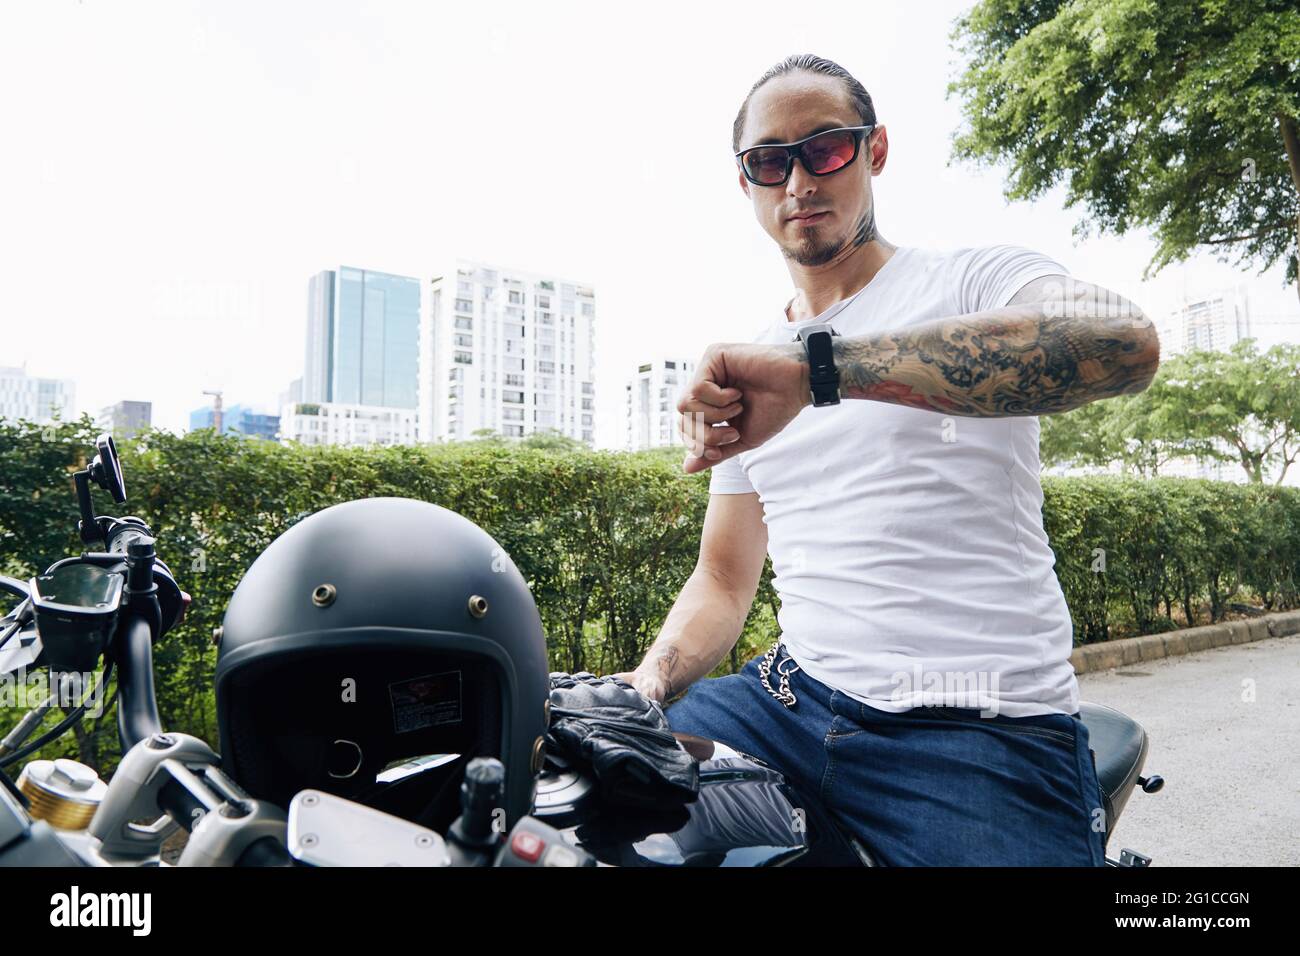 Mann mit Sonnenbrille und weißem T-Shirt, der auf dem Motorrad oder Roller sitzt und die Zeit oder Benachrichtigungen auf seiner Smartwatch überprüft Stockfoto